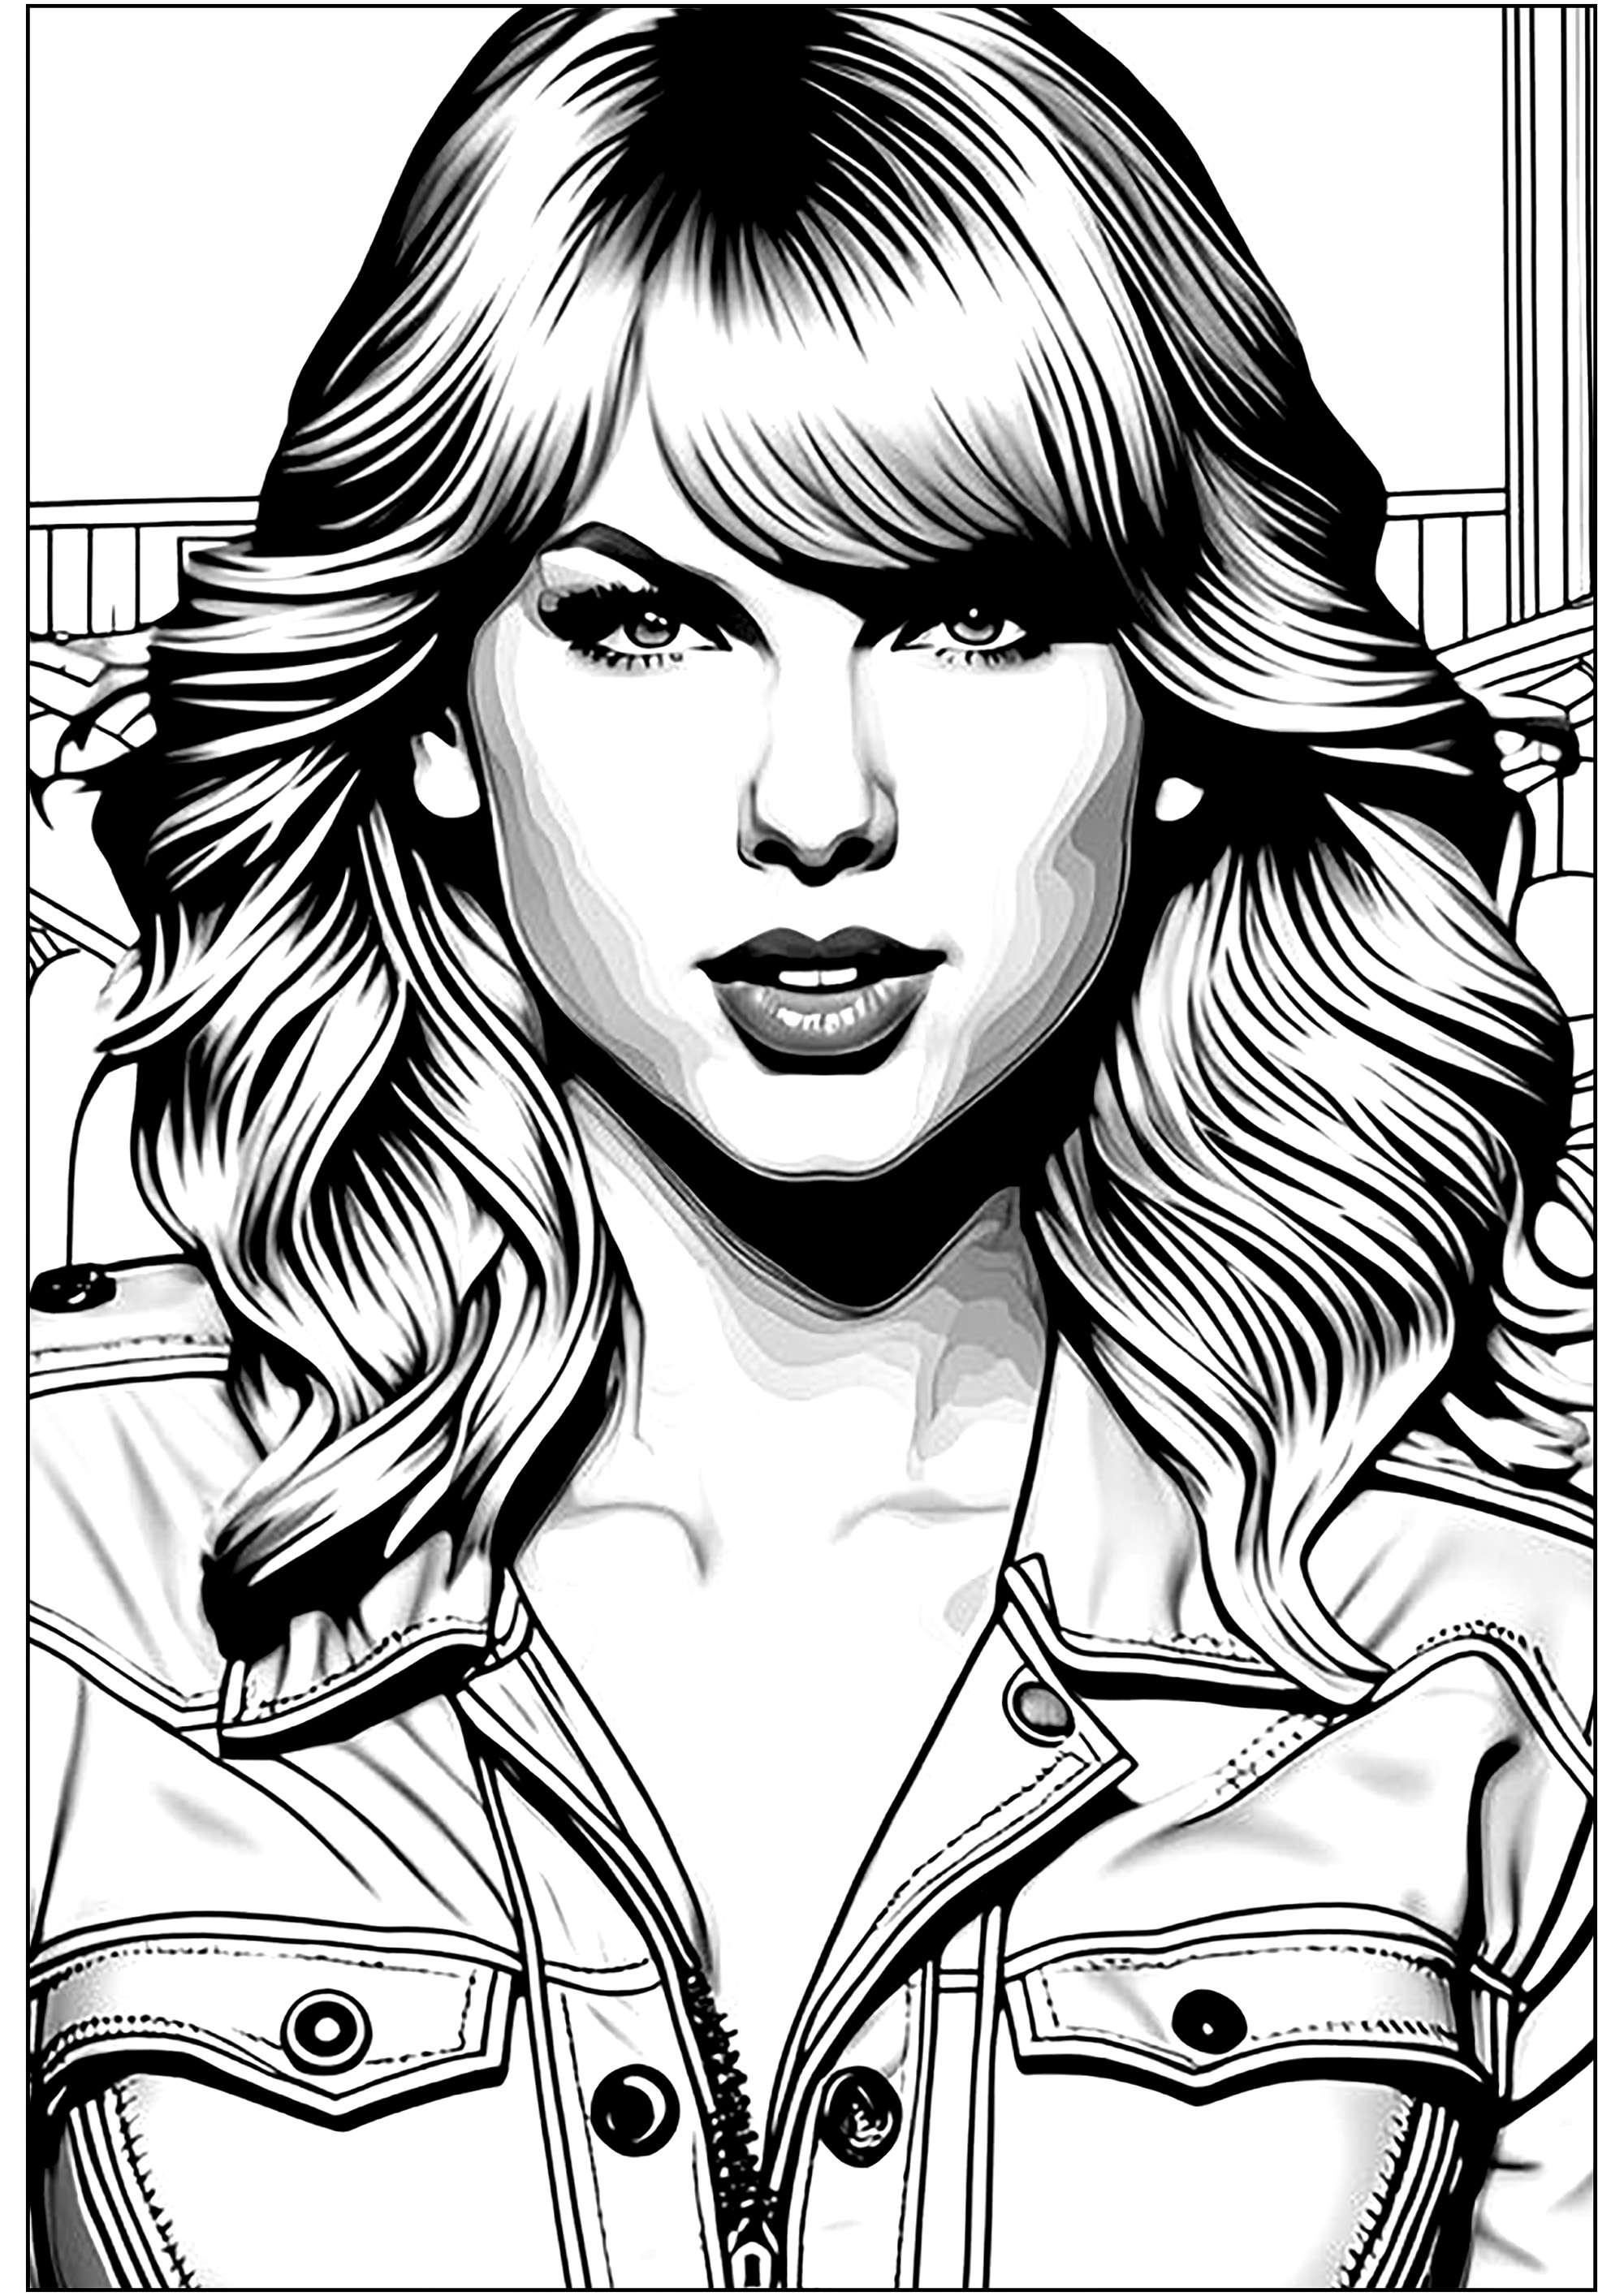 Libro para colorear de Taylor Swift. Taylor apenas tenía 17 años cuando debutó en Nashville en 2006 con el sello Big Machine de Scott Borchetta. Después publicó su primer álbum de country, en el que escribió casi todas las canciones.